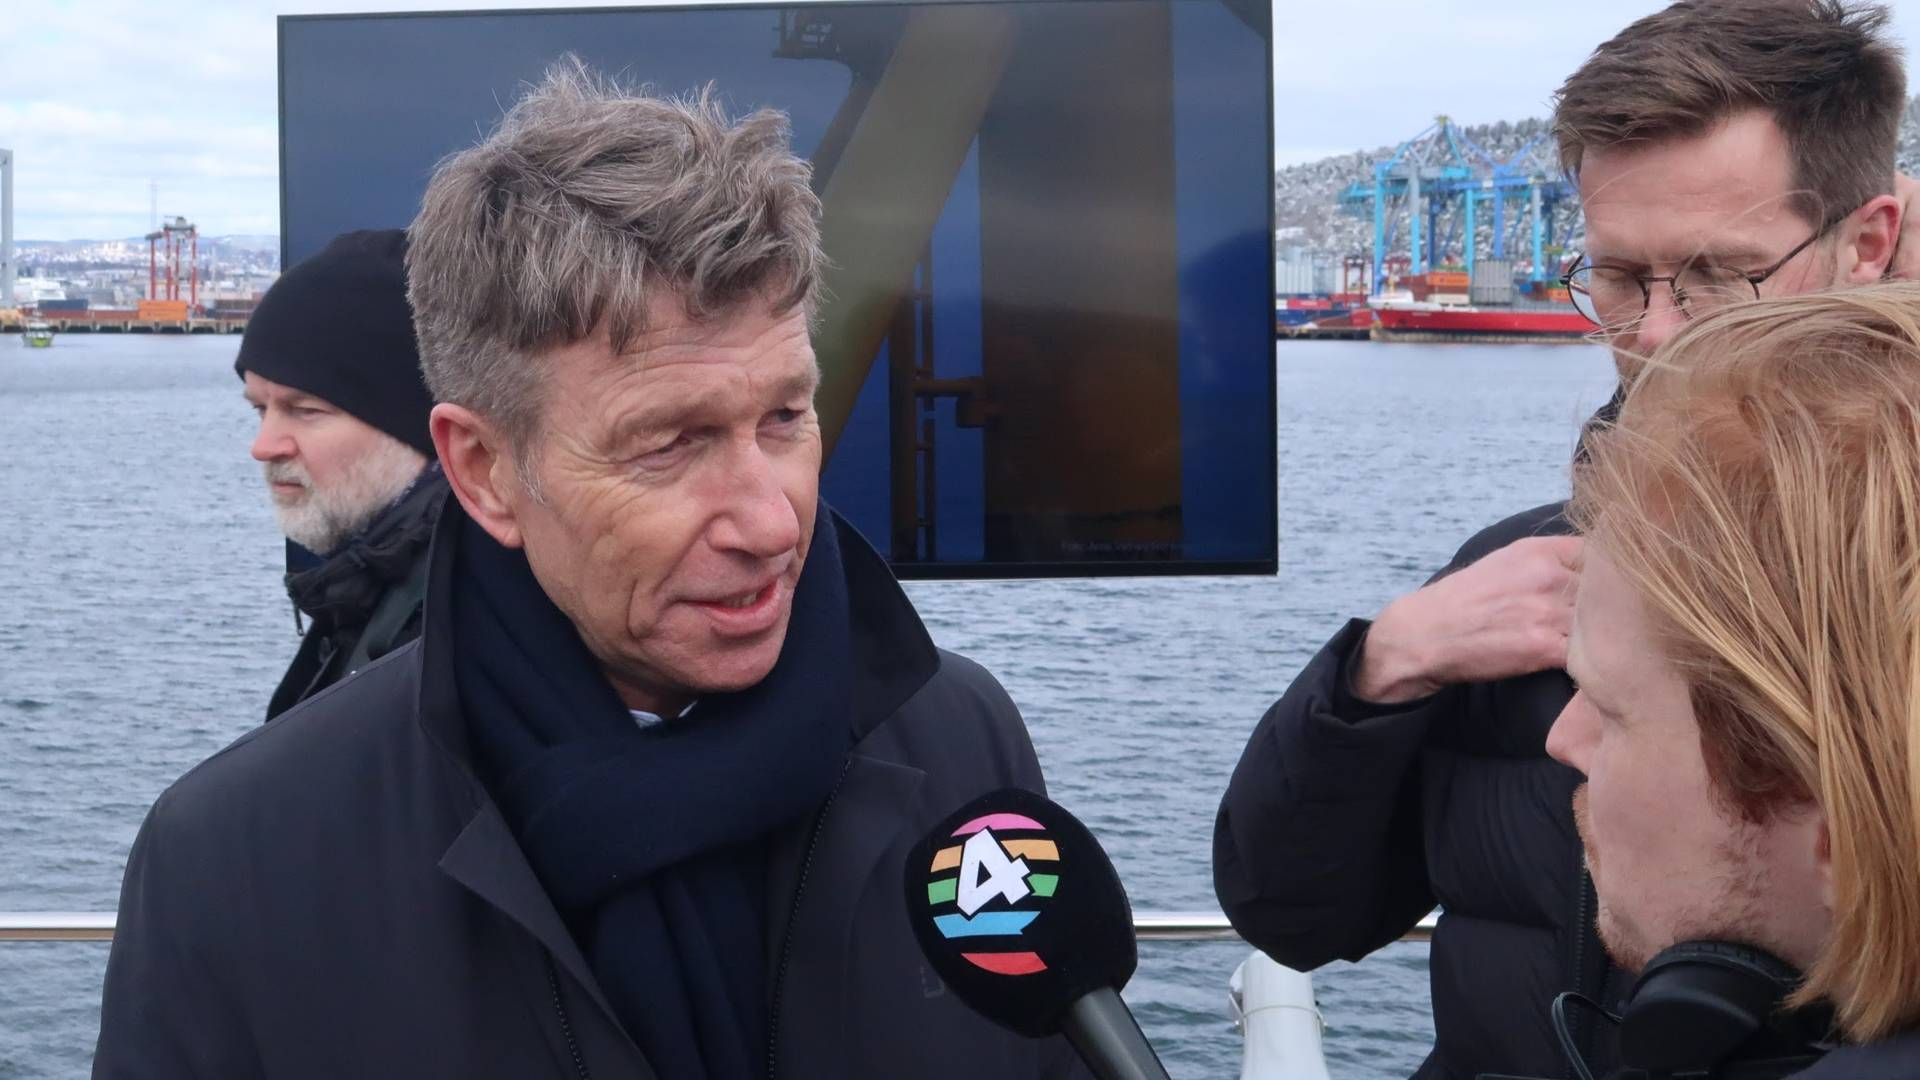 SNART AUKSJON: Olje- og energiminister Terje Aasland (Ap) sier at konsortiene som sikter seg inn på Sørlige Nordsjø II ikke kan forvente at regjeringen nå justerer rammeverket. | Foto: Anders Lie Brenna